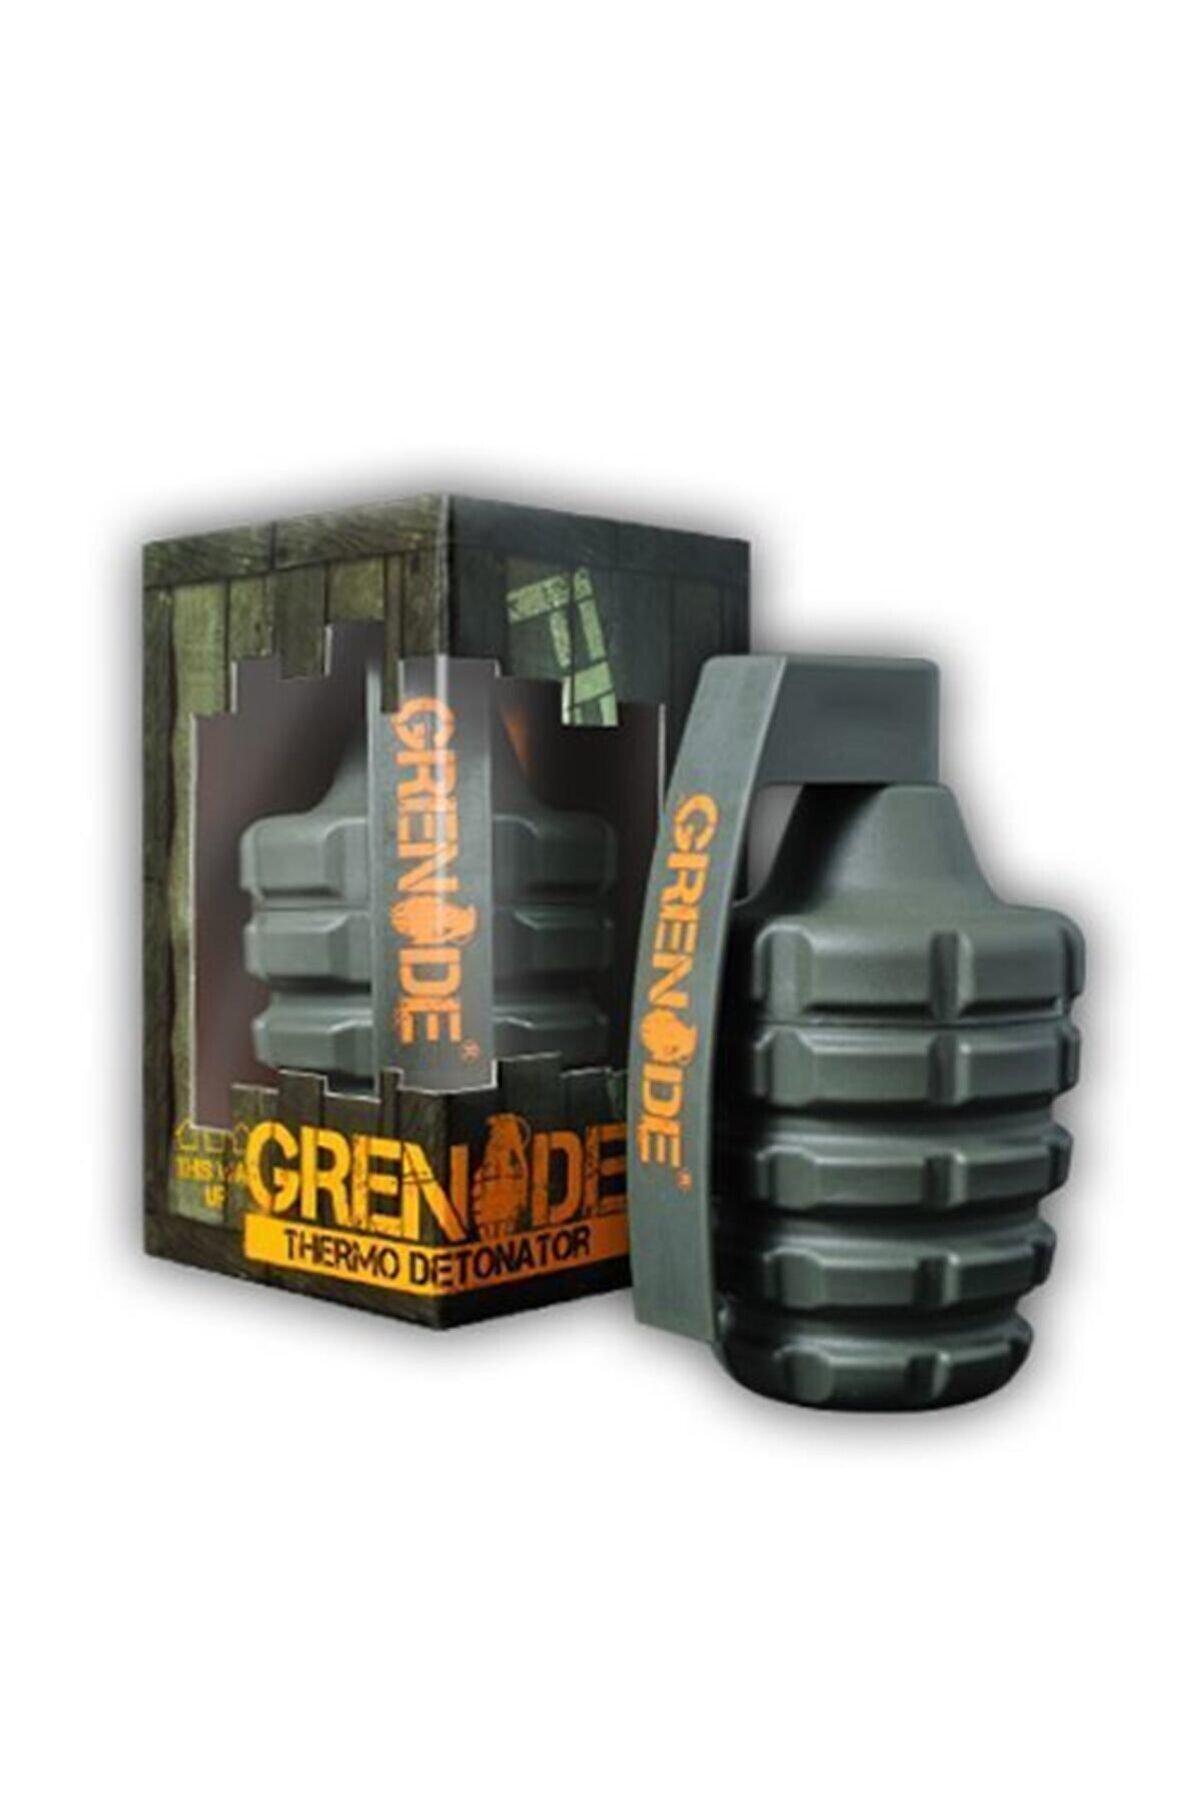 Grenade Thermo 100capsül